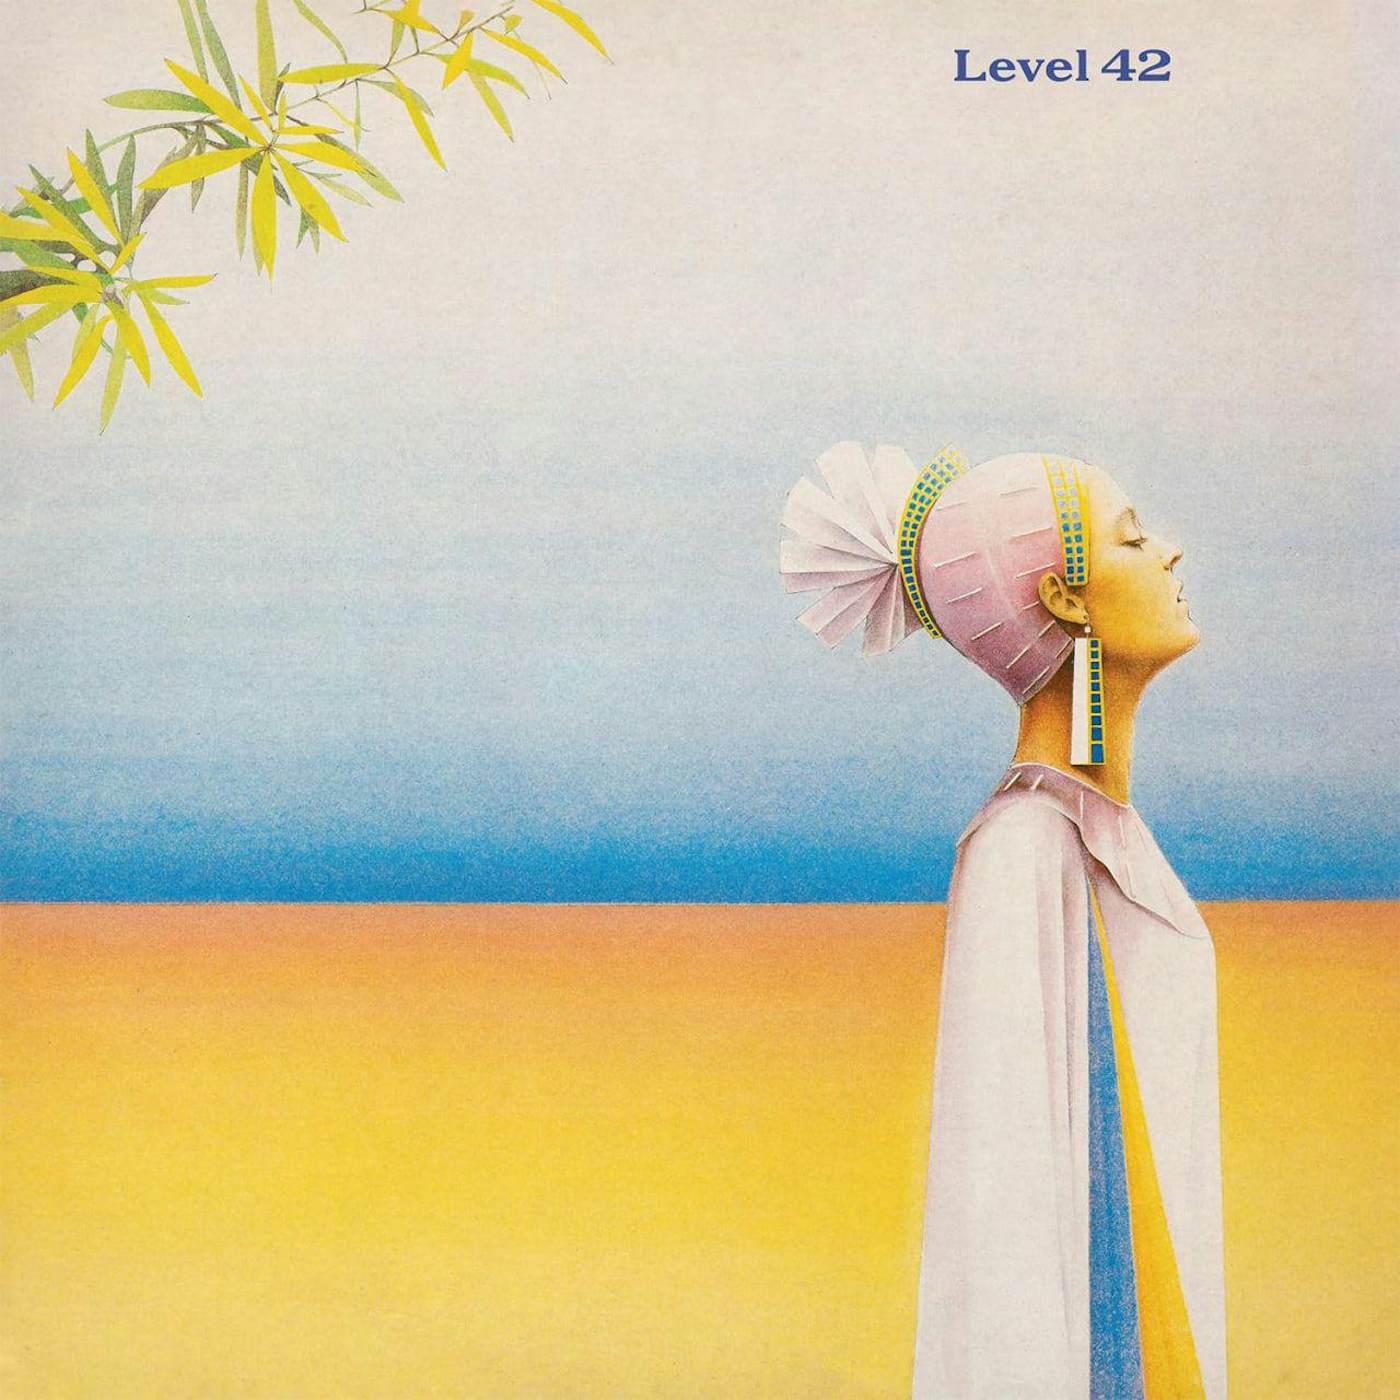 Level 42 S/T  Vinyl Record